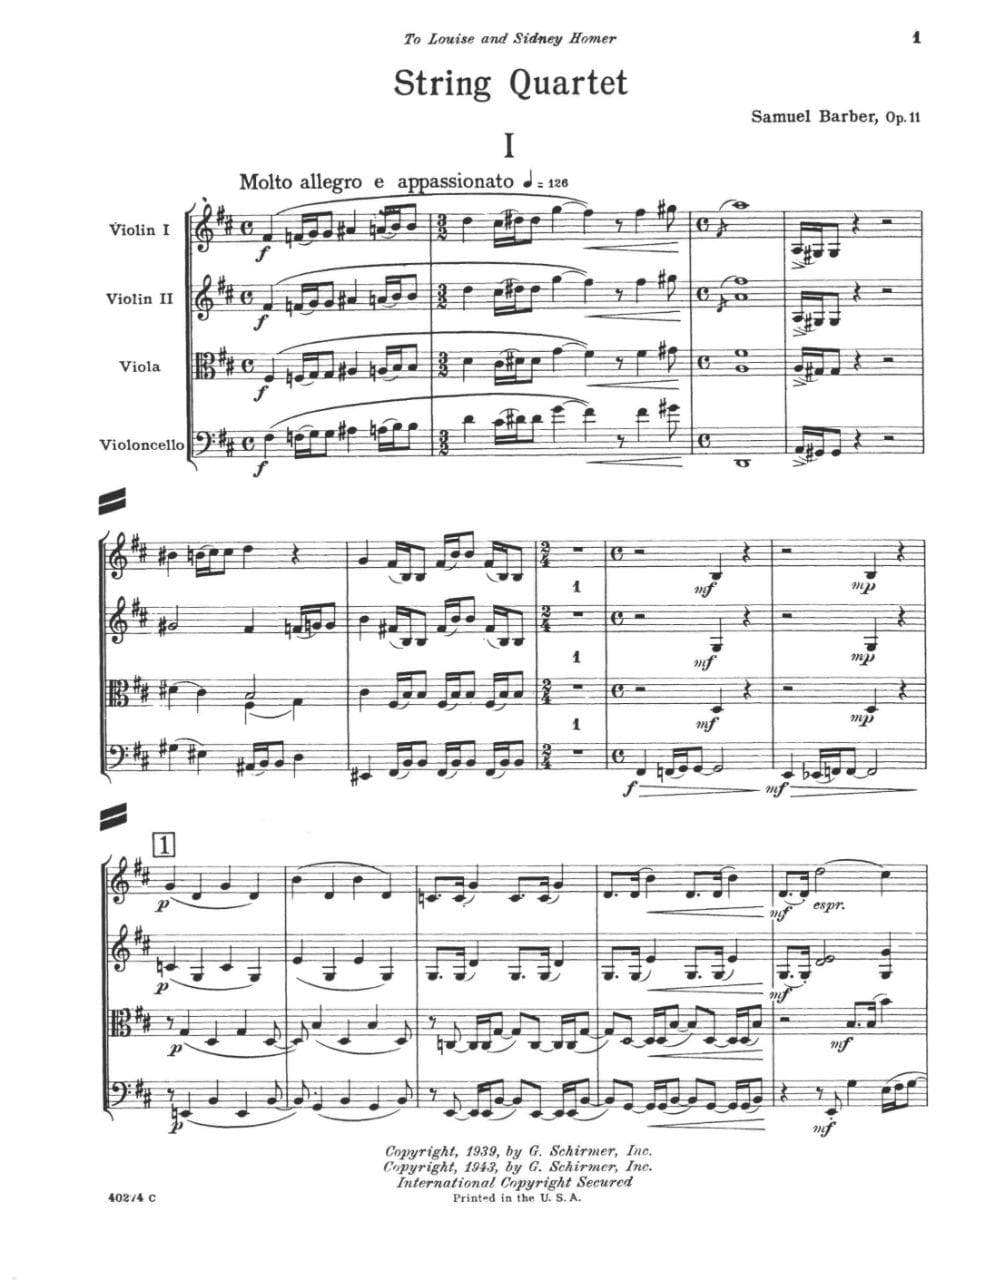 Barber, Samuel - String Quartet Op 11 - Score - Schirmer Edition